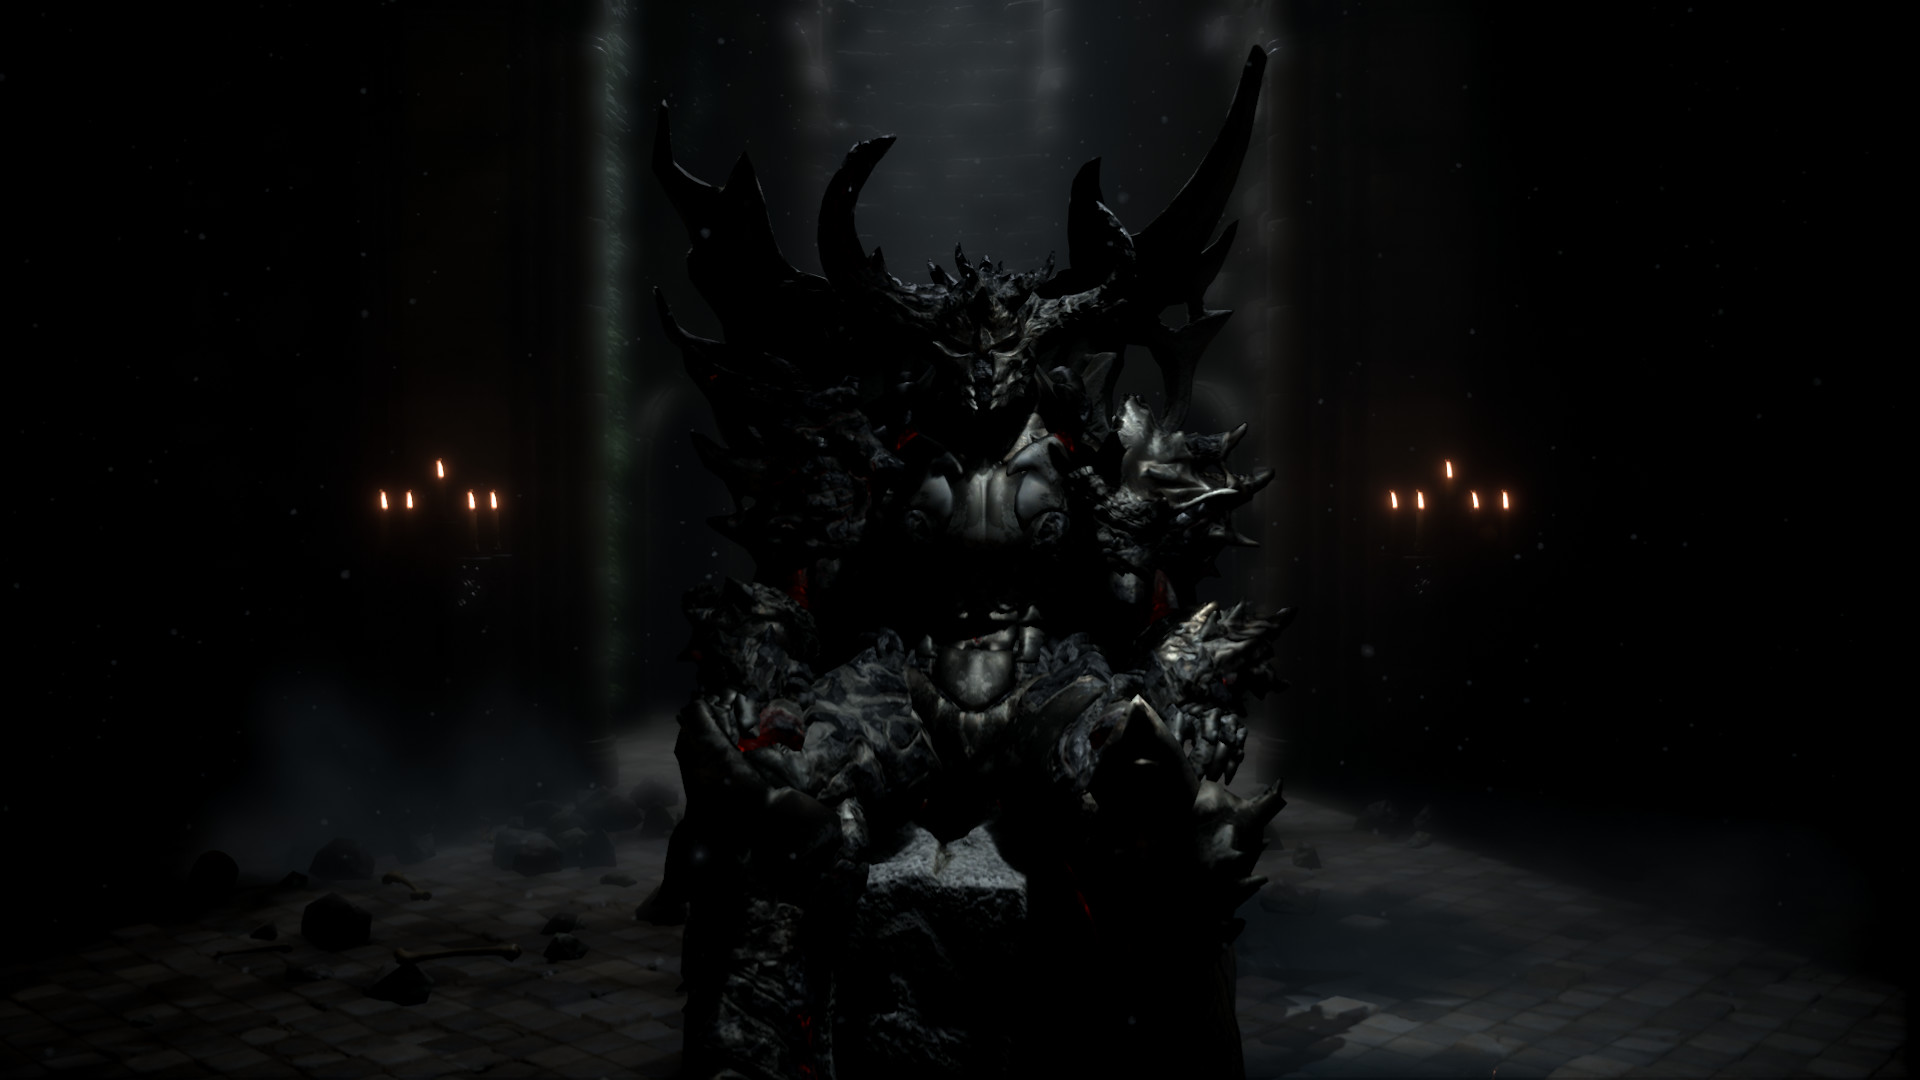 Dark Throne: explorando um RPG dominado por demônios com NFTs e